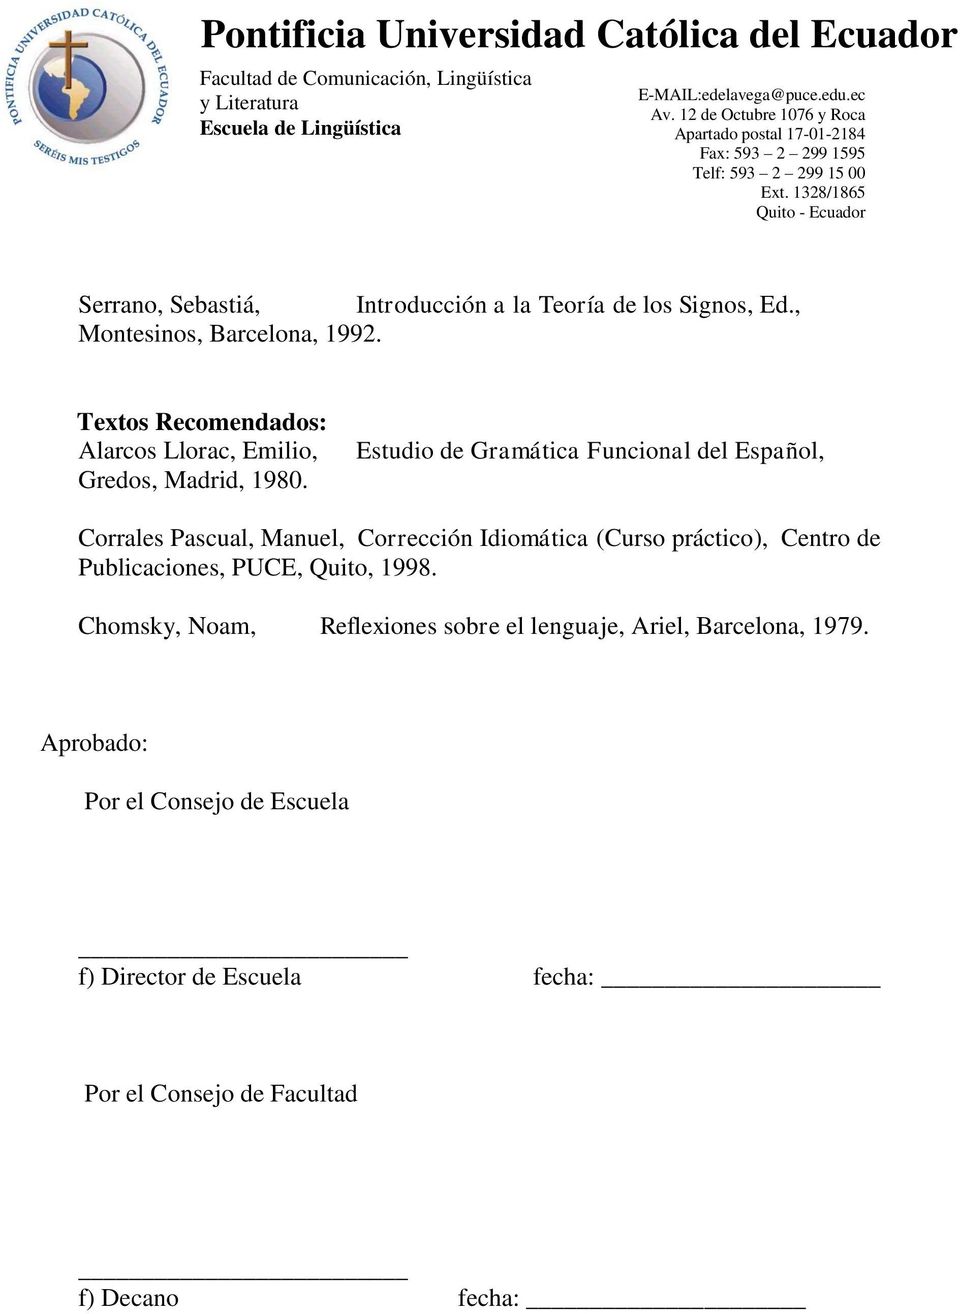 Estudio de Gramática Funcional del Español, Corrales Pascual, Manuel, Corrección Idiomática (Curso práctico), Centro de